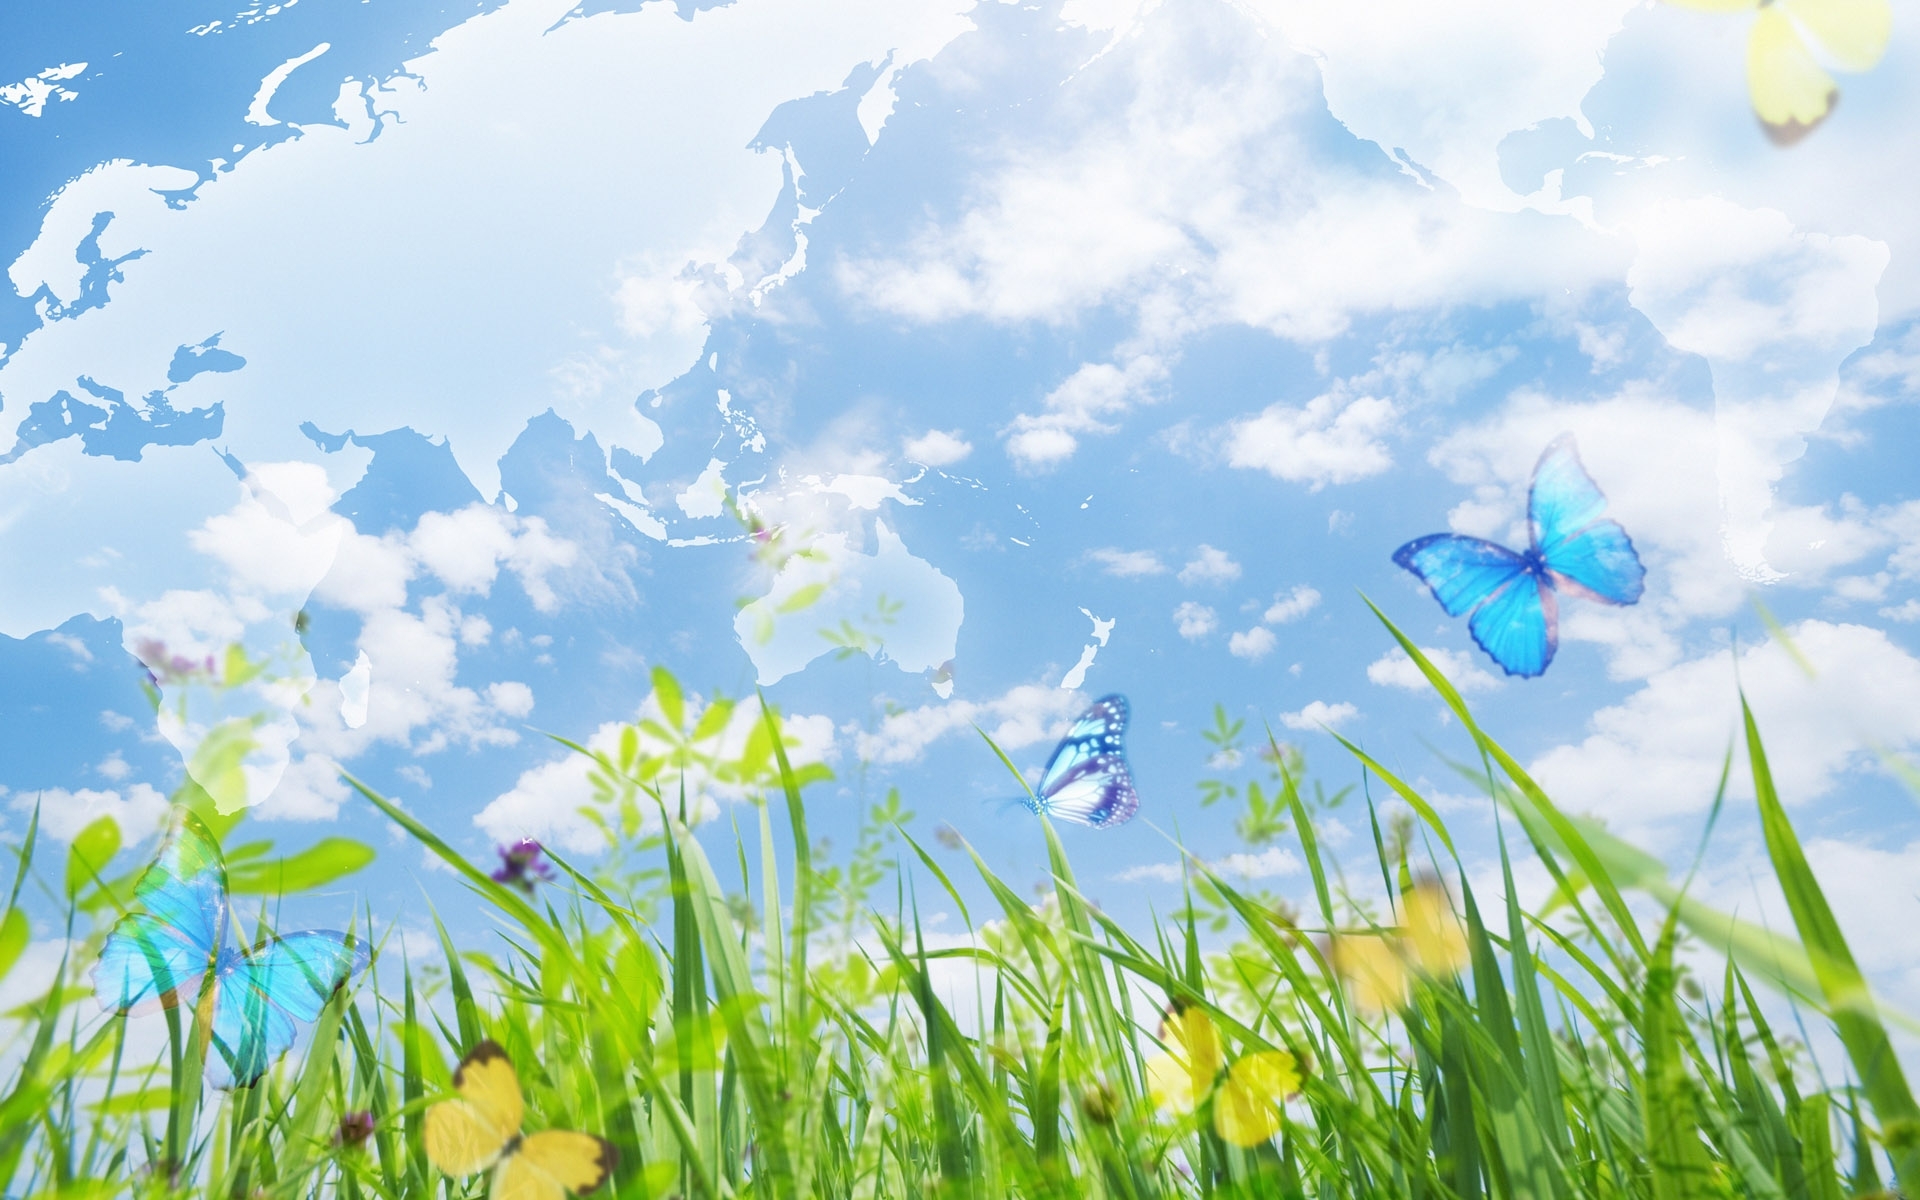 Скачать обои бесплатно Бабочки, Небо, Трава, Пейзаж картинка на рабочий стол ПК